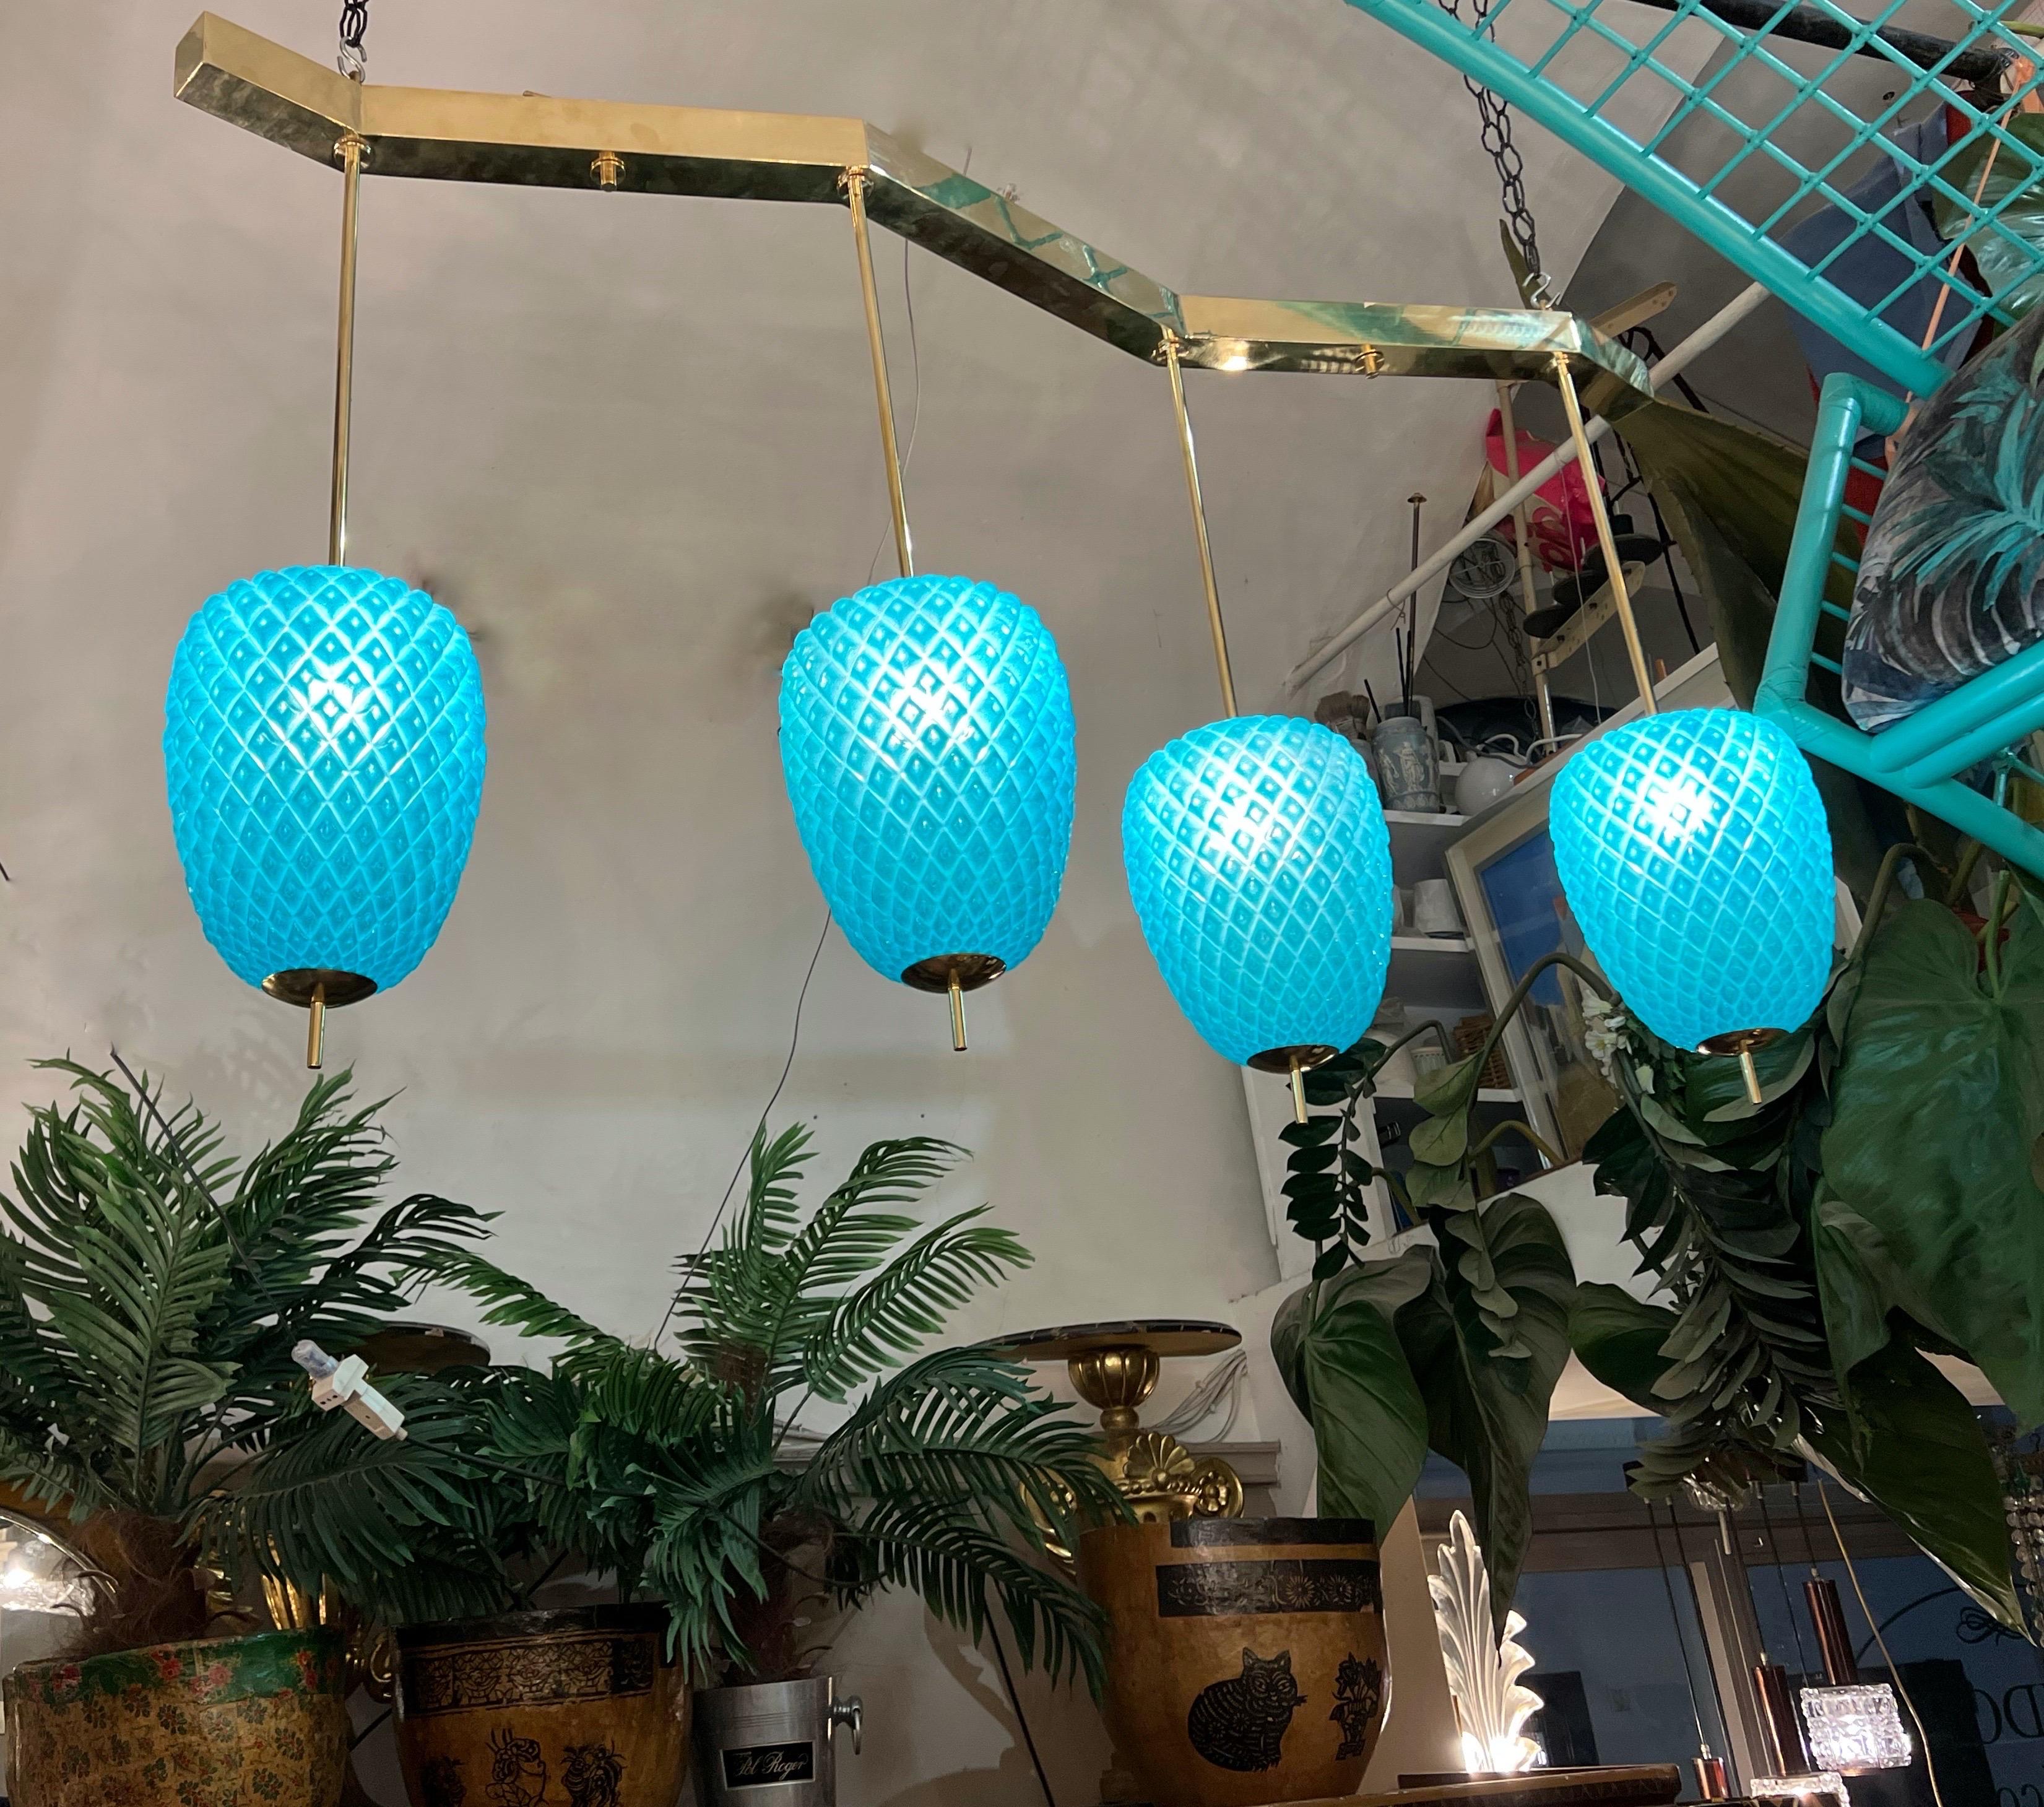 Lustre pendentif en verre Murano turquoise en forme d'ananas avec 4 lumières et structure en laiton. Parfait pour être placé sur une table à manger. Il peut être fixé directement sur le plafond de la descente selon les besoins.